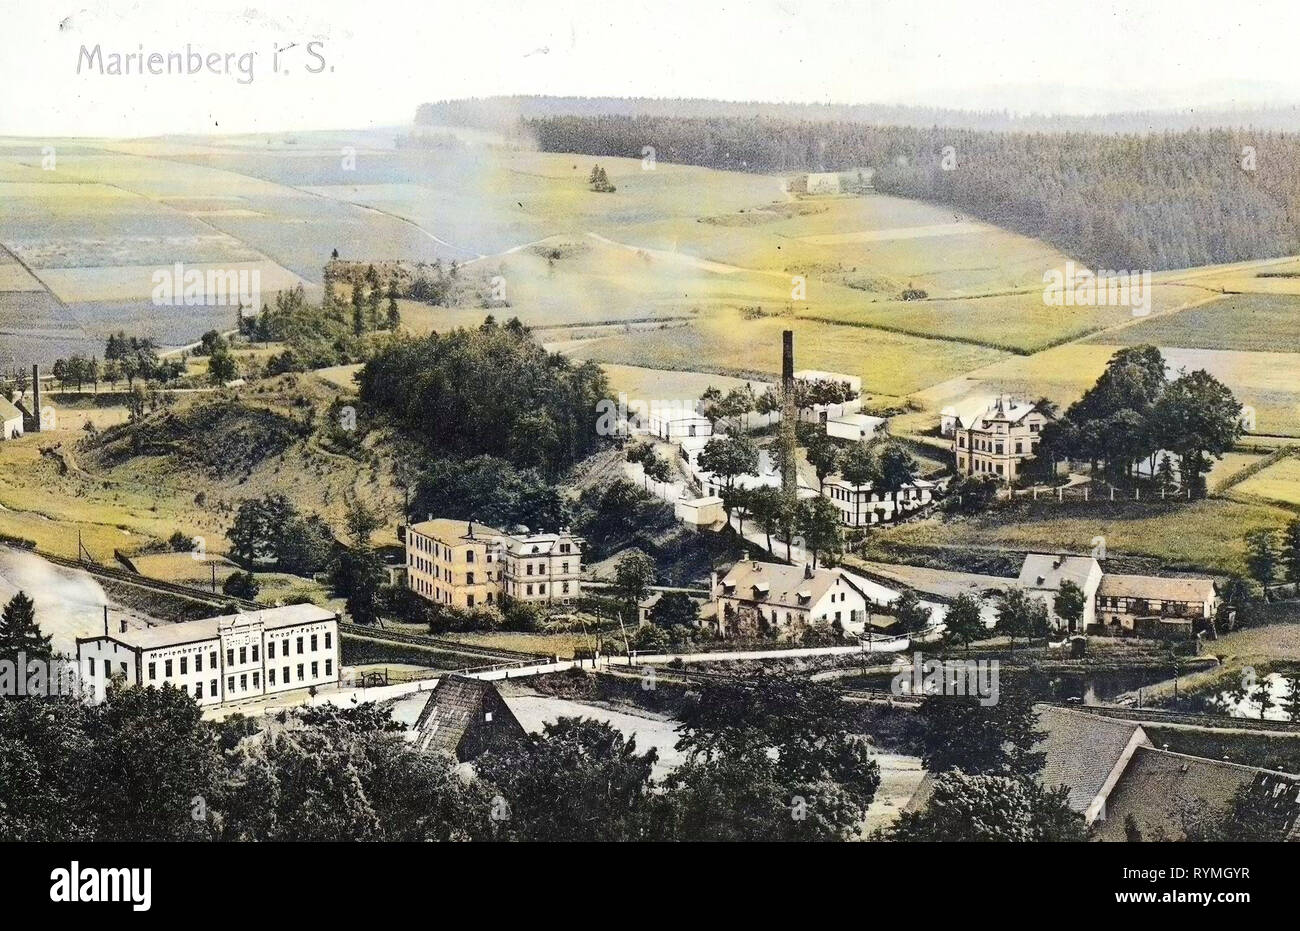 Buildings in Erzgebirgskreis, Flöha (river), Level crossings in Erzgebirgskreis, Industry in Saxony, Ponds in Erzgebirgskreis, 1908, Erzgebirgskreis, Marienberg, Germany Stock Photo